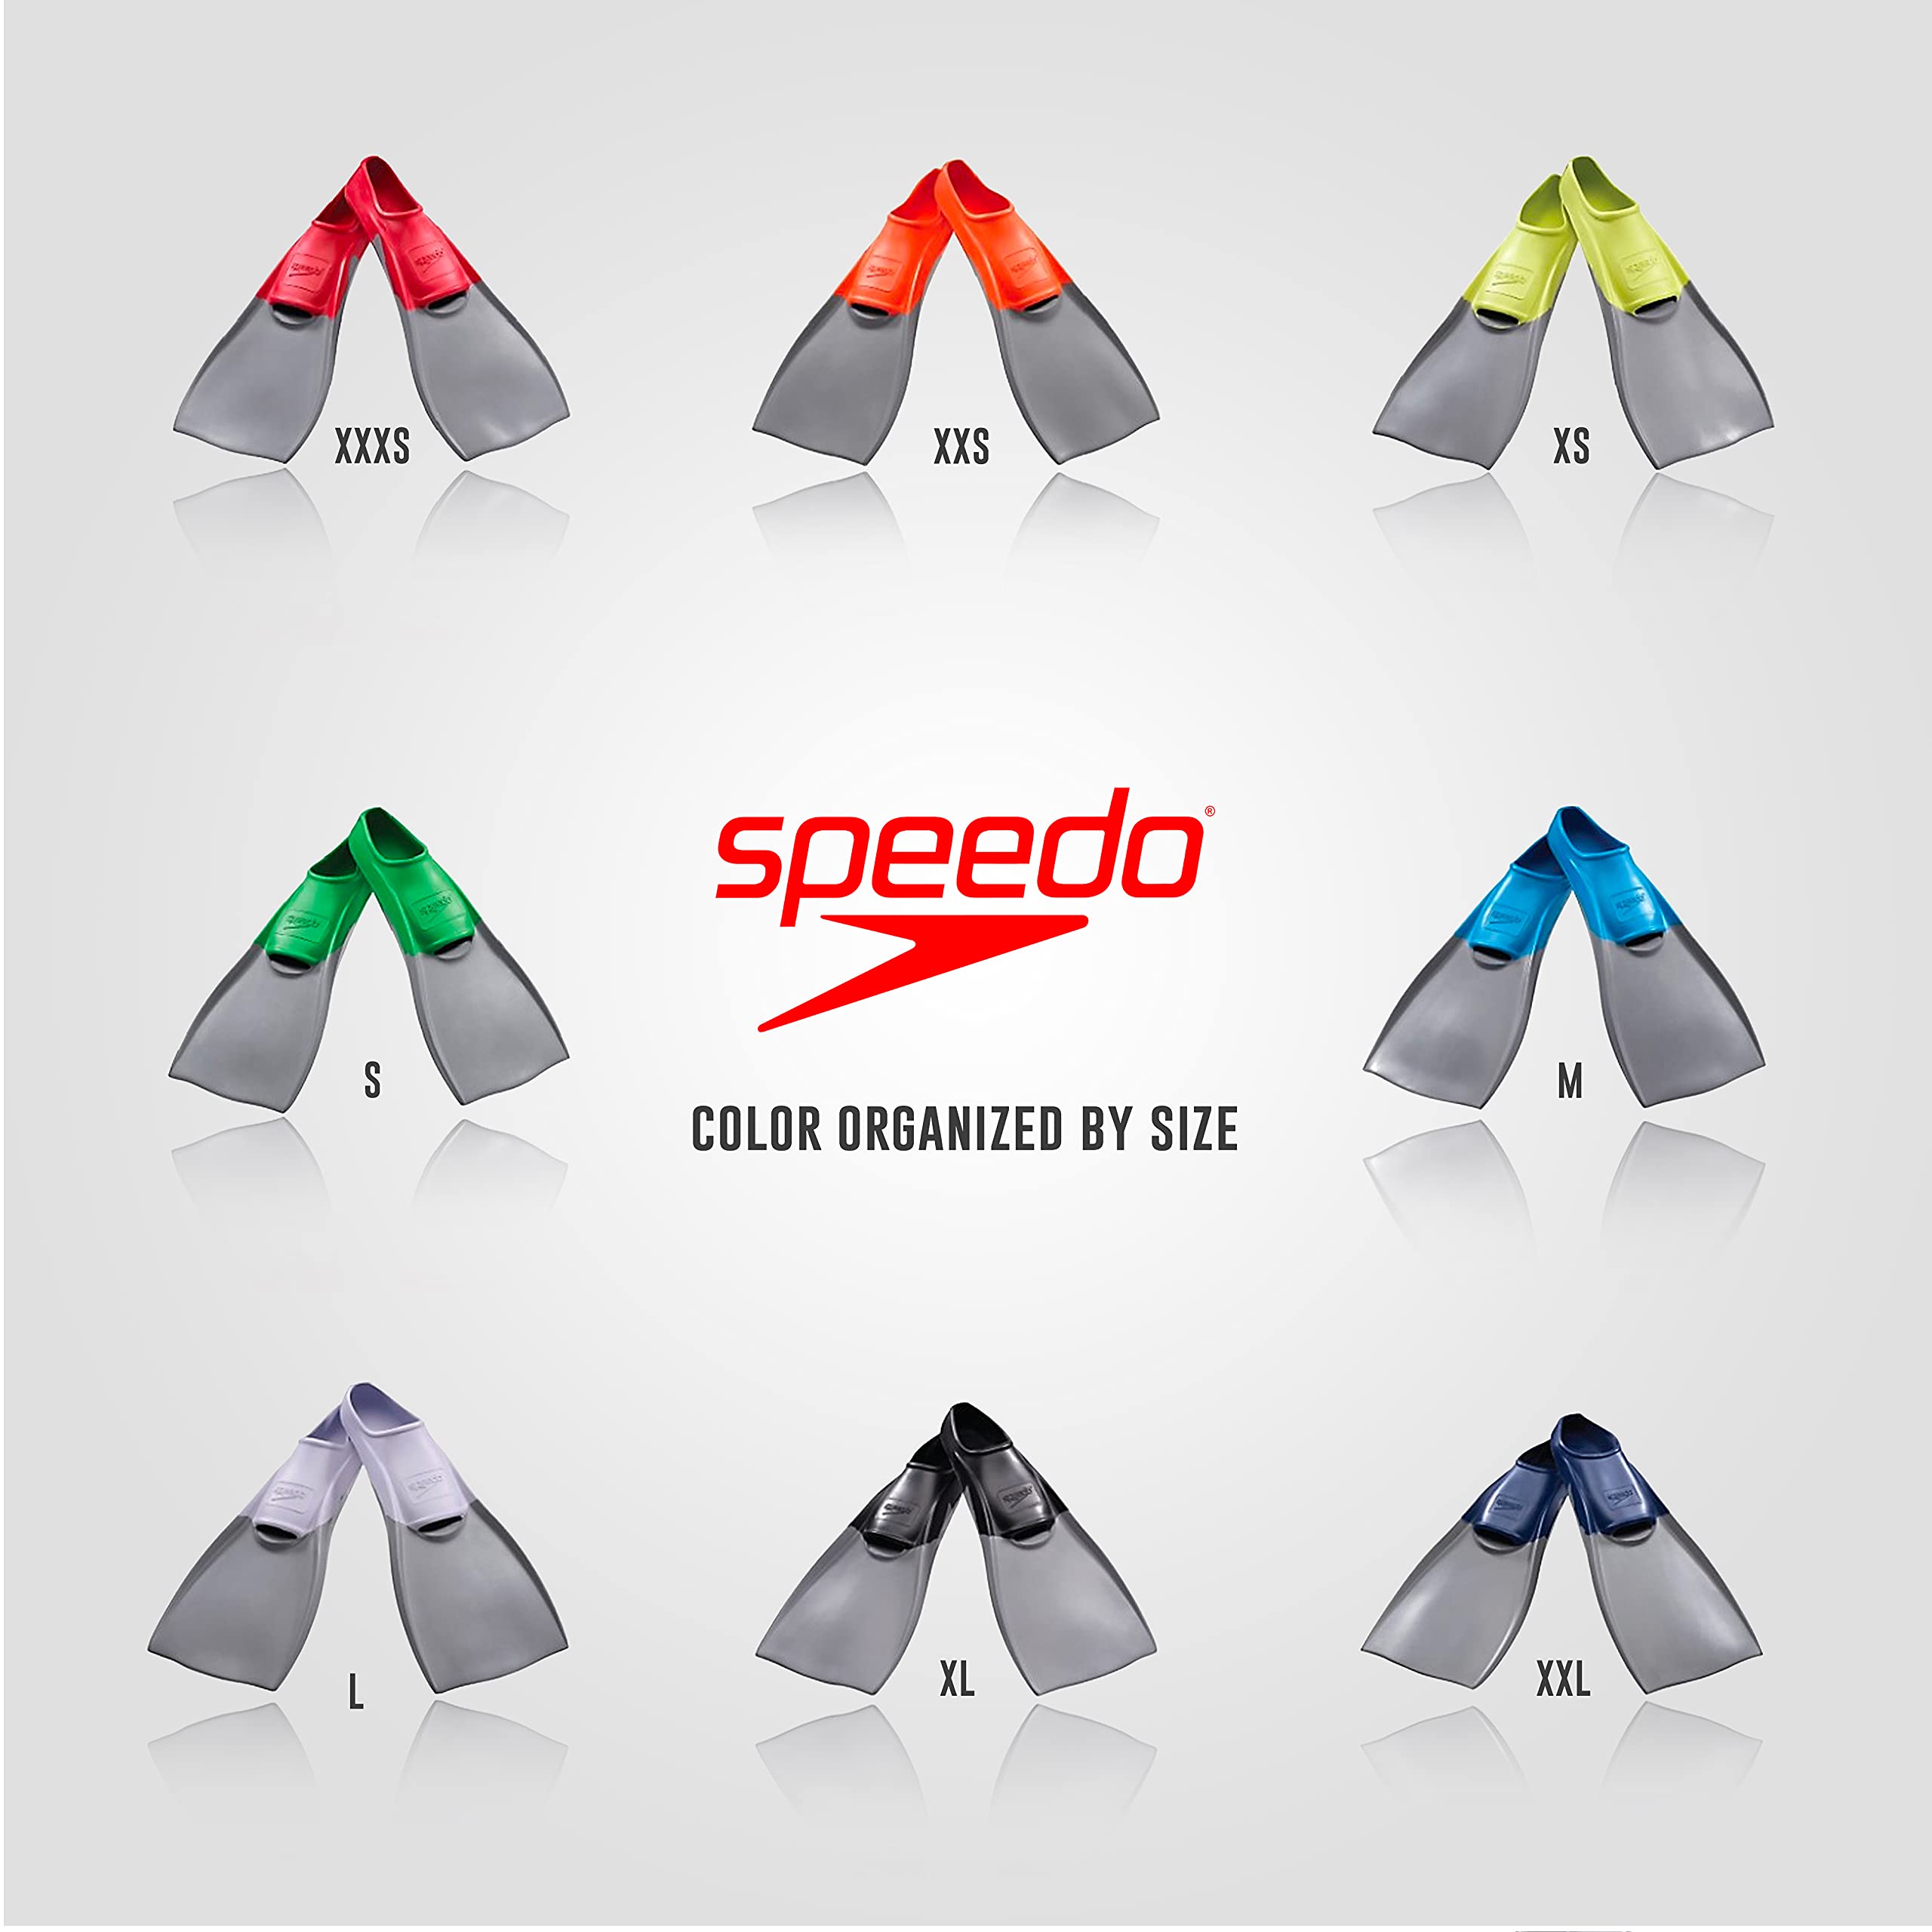 Speedo unisex Rubber Long Blade training swim fins, Black/Grey, XL - Men s Shoe size 10-11 Women Shoe 11.5-12.5 US